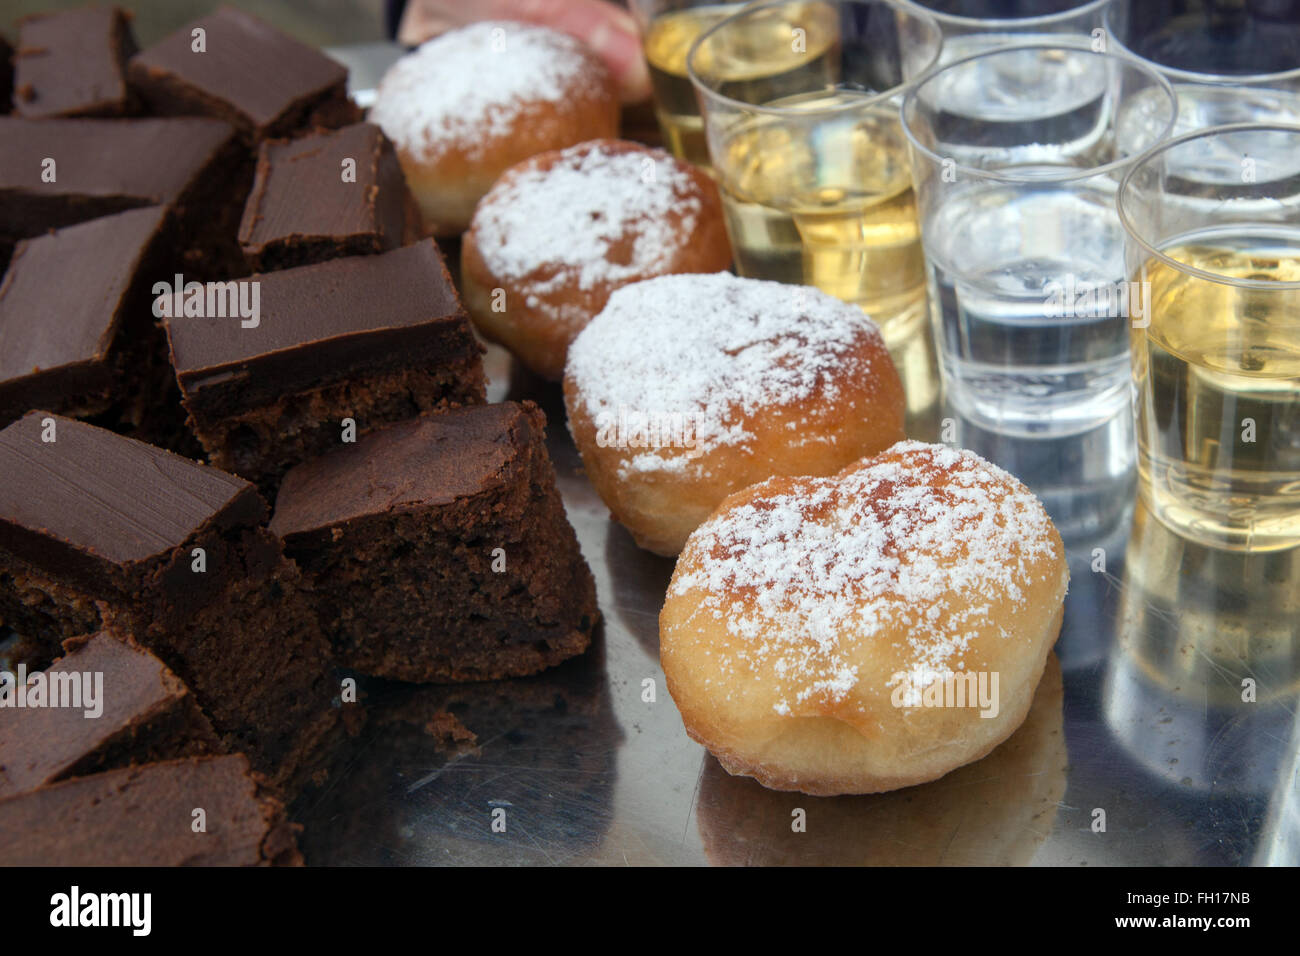 Maison tchèque sweet jam donuts, brownies, coups d'alcool Banque D'Images